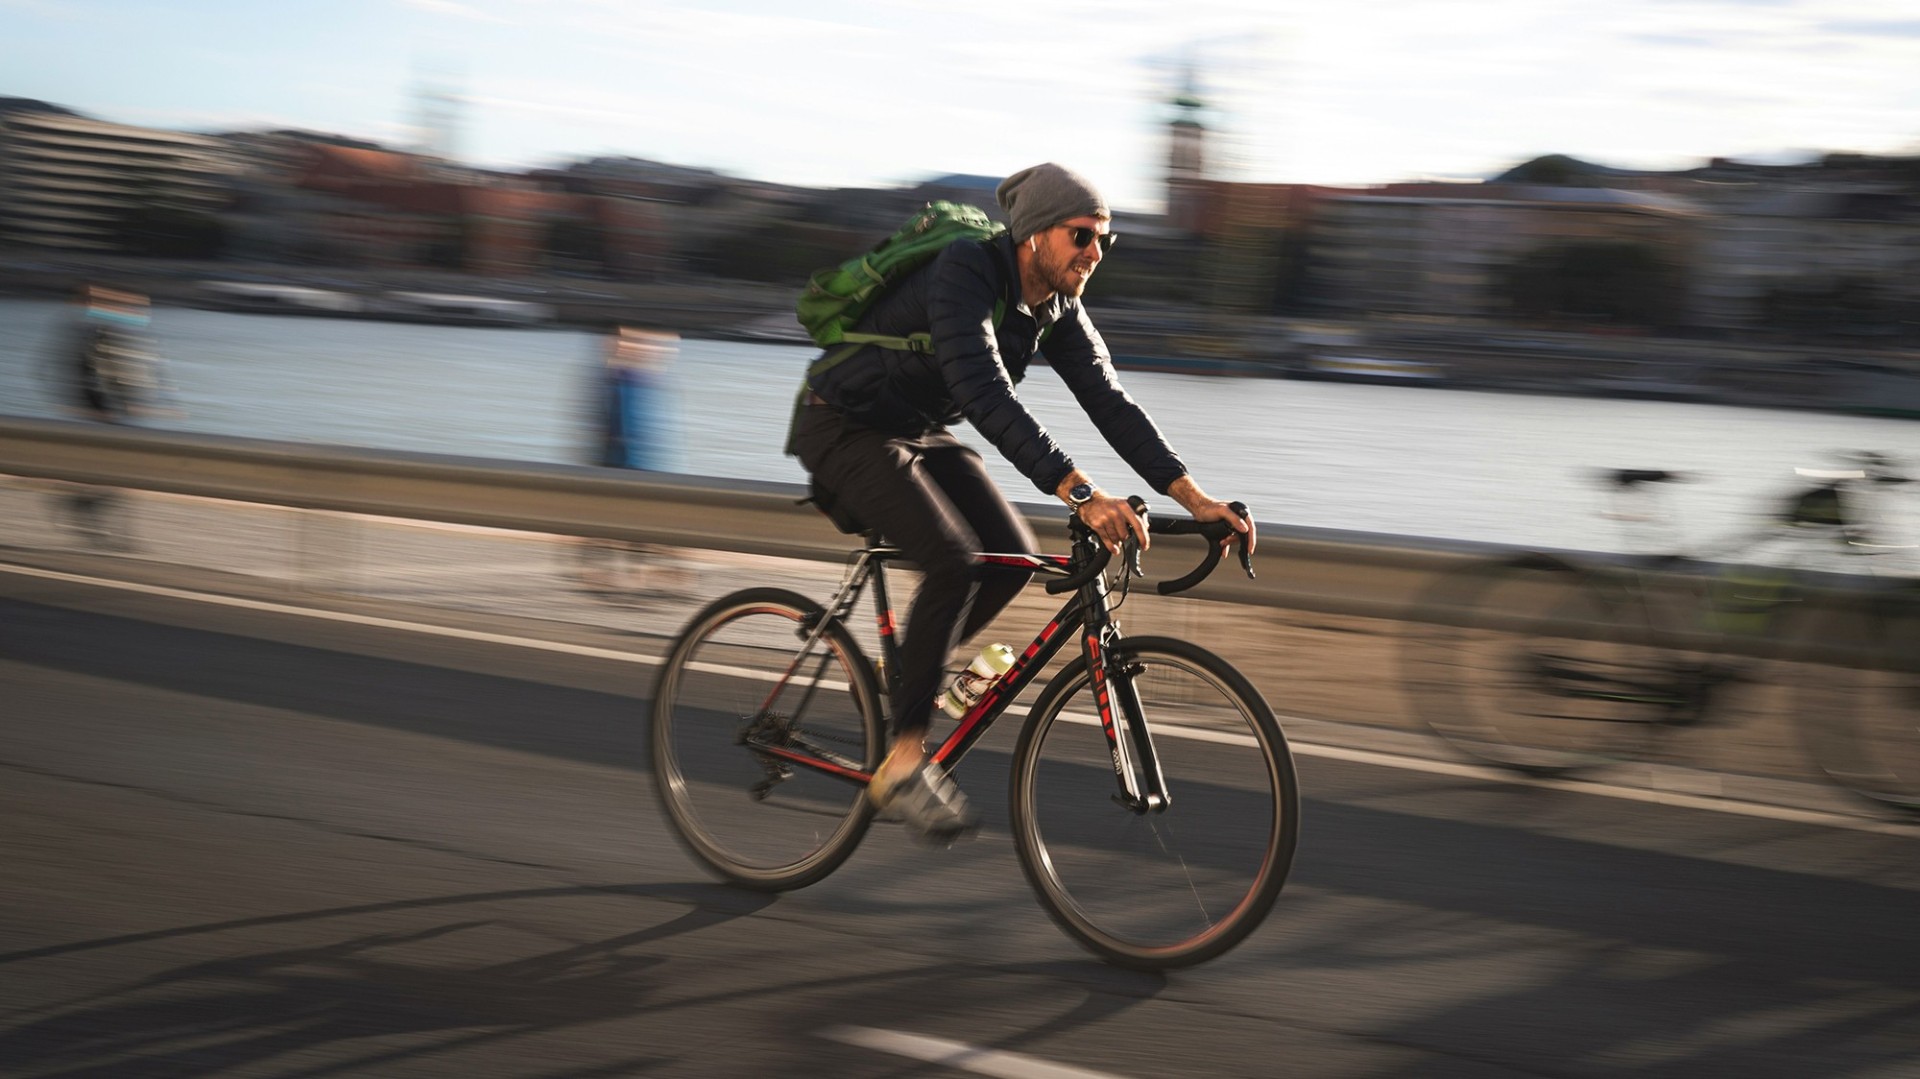 Ein 30 jähriger Mann mit Mütze und Sonnenbrille fährt mit seinem Fahrrad am Flussufer entlang. Er steht im Fokus, während seine Umgebung und andere Menschen unscharf an ihm vorbeiziehen.